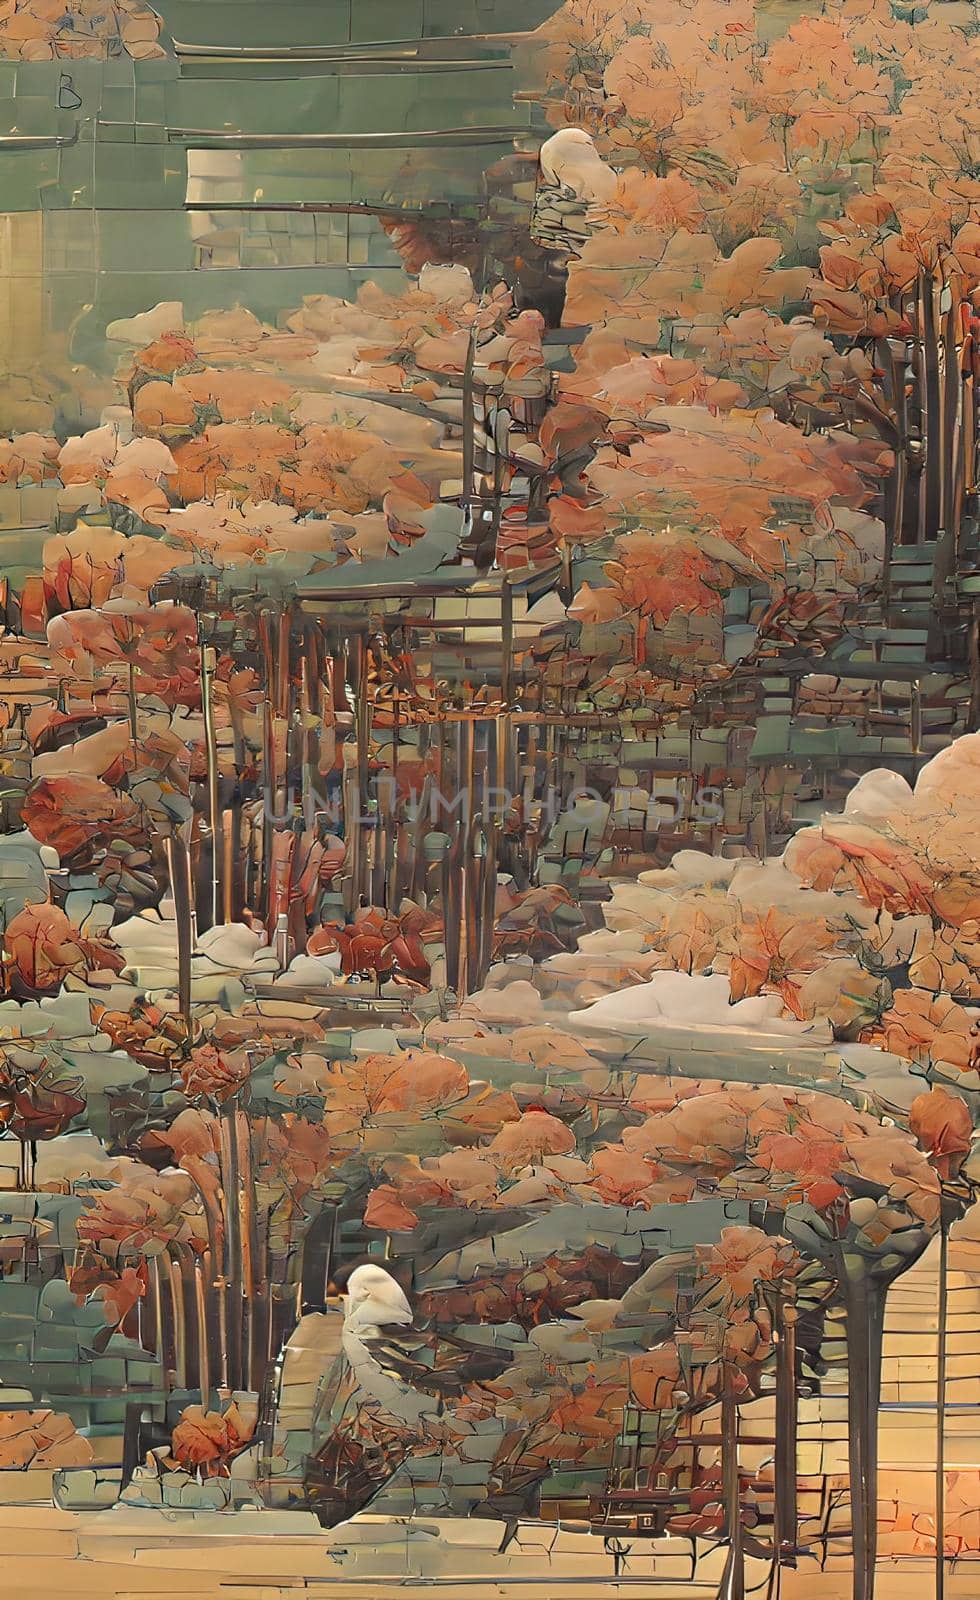 Autumn season and trees in nature by yilmazsavaskandag